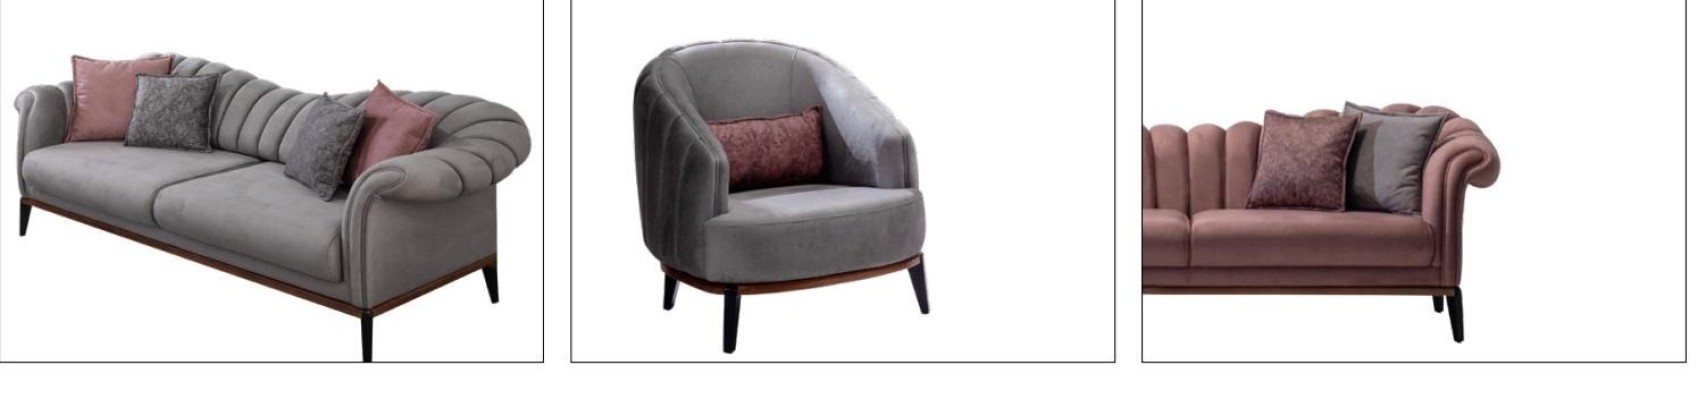 Дизайнерский диванный гарнитур из 2 частей 3+3 местные диваны текстильная современная обивка мебель для гостиной